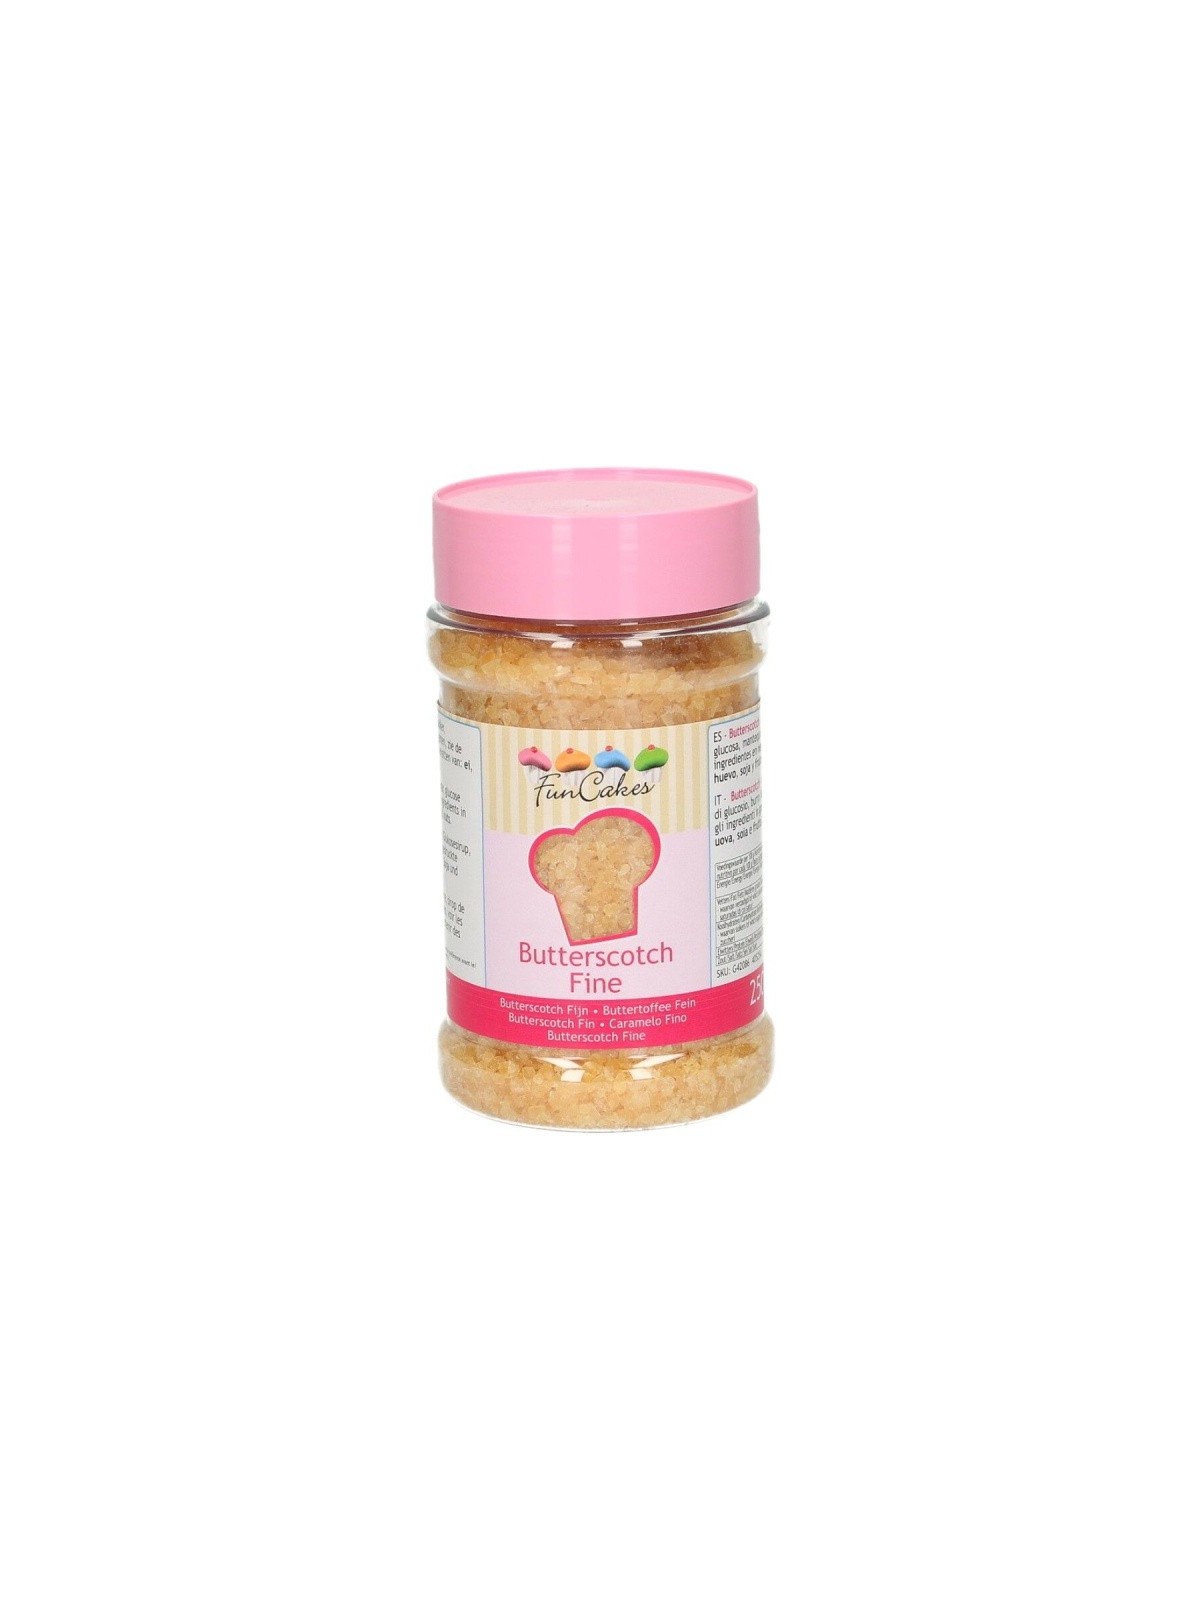 RABATT: FunCakes Butterscotch - karamellisierter Zucker - fein250g